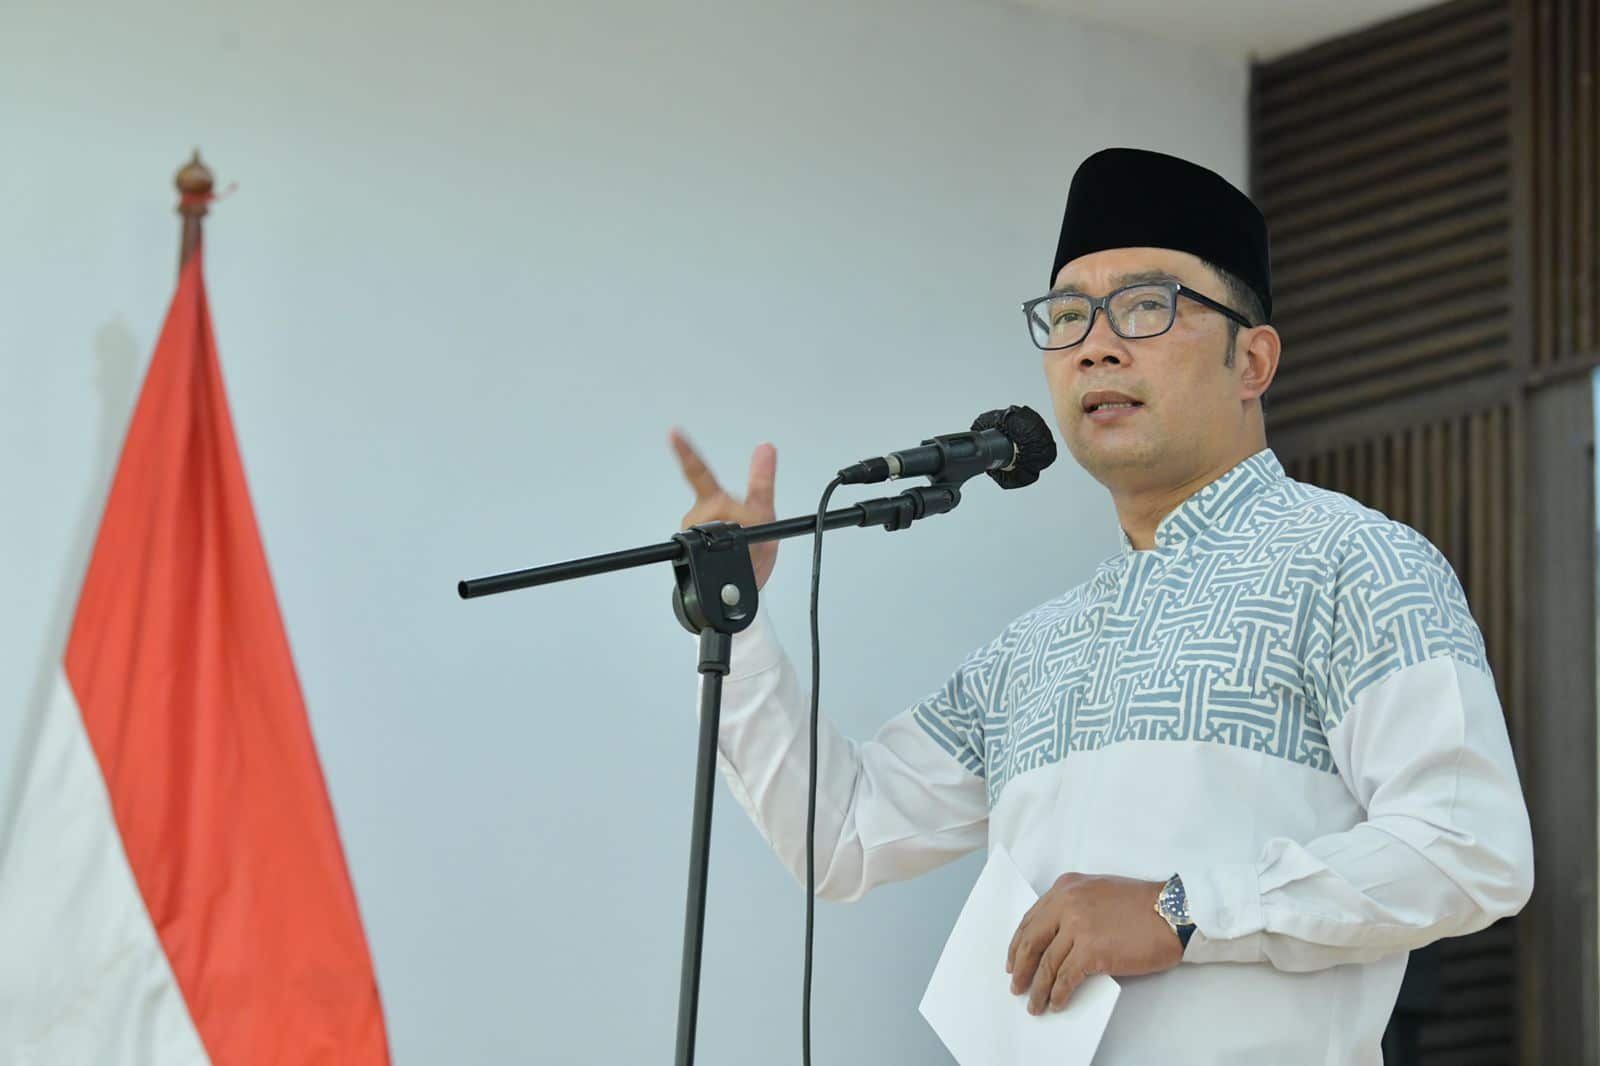 Herry Wirawan Divonis Penjara Seumur Hidup, Ridwan Kamil Bilang Begini